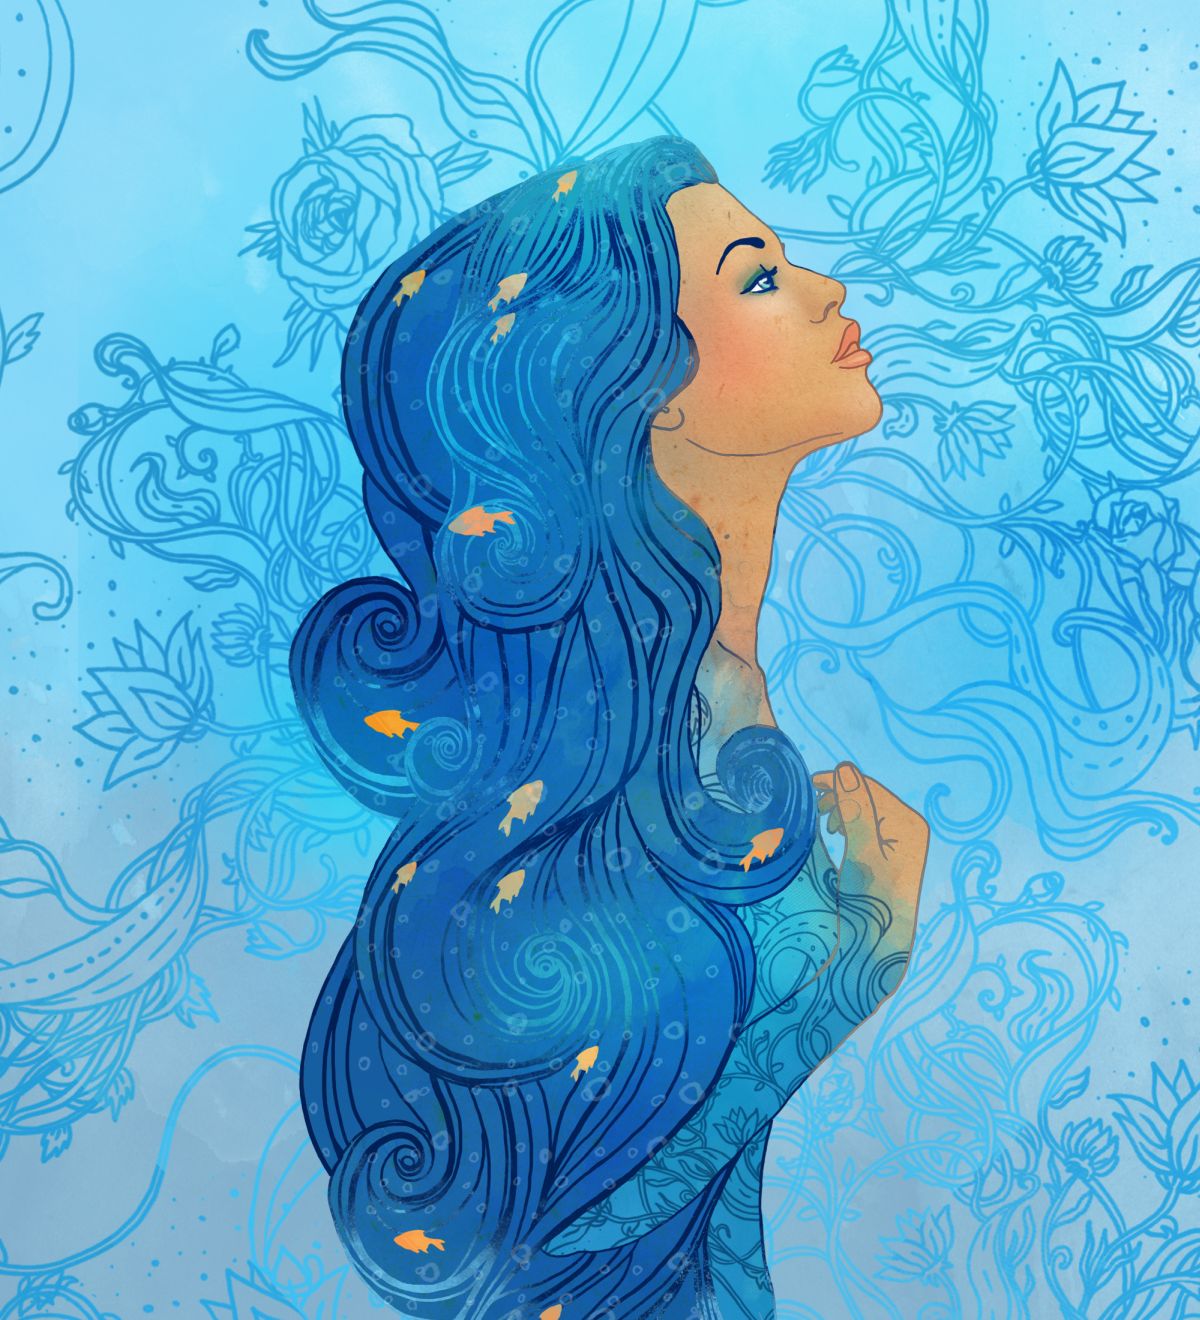 o femeie frumoasă, cu părul lung și albastru, ilustrează zodia Vărsător.